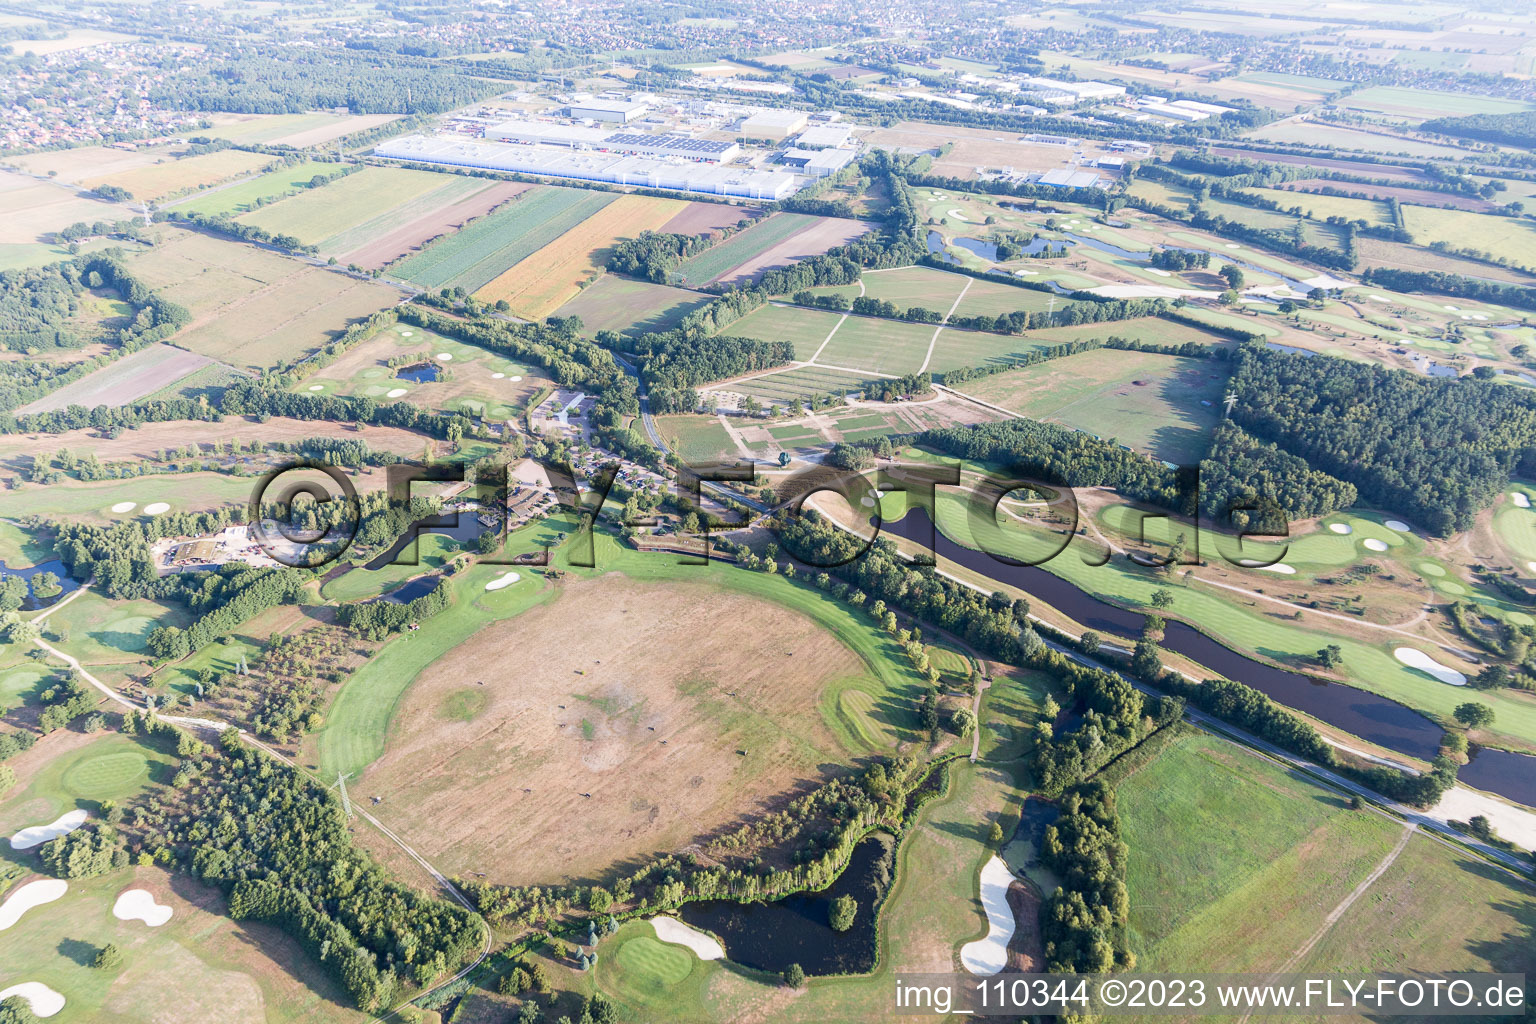 Gelände des Golfplatz Green Eagle Golf Courses in Winsen (Luhe) im Bundesland Niedersachsen, Deutschland von der Drohne aus gesehen